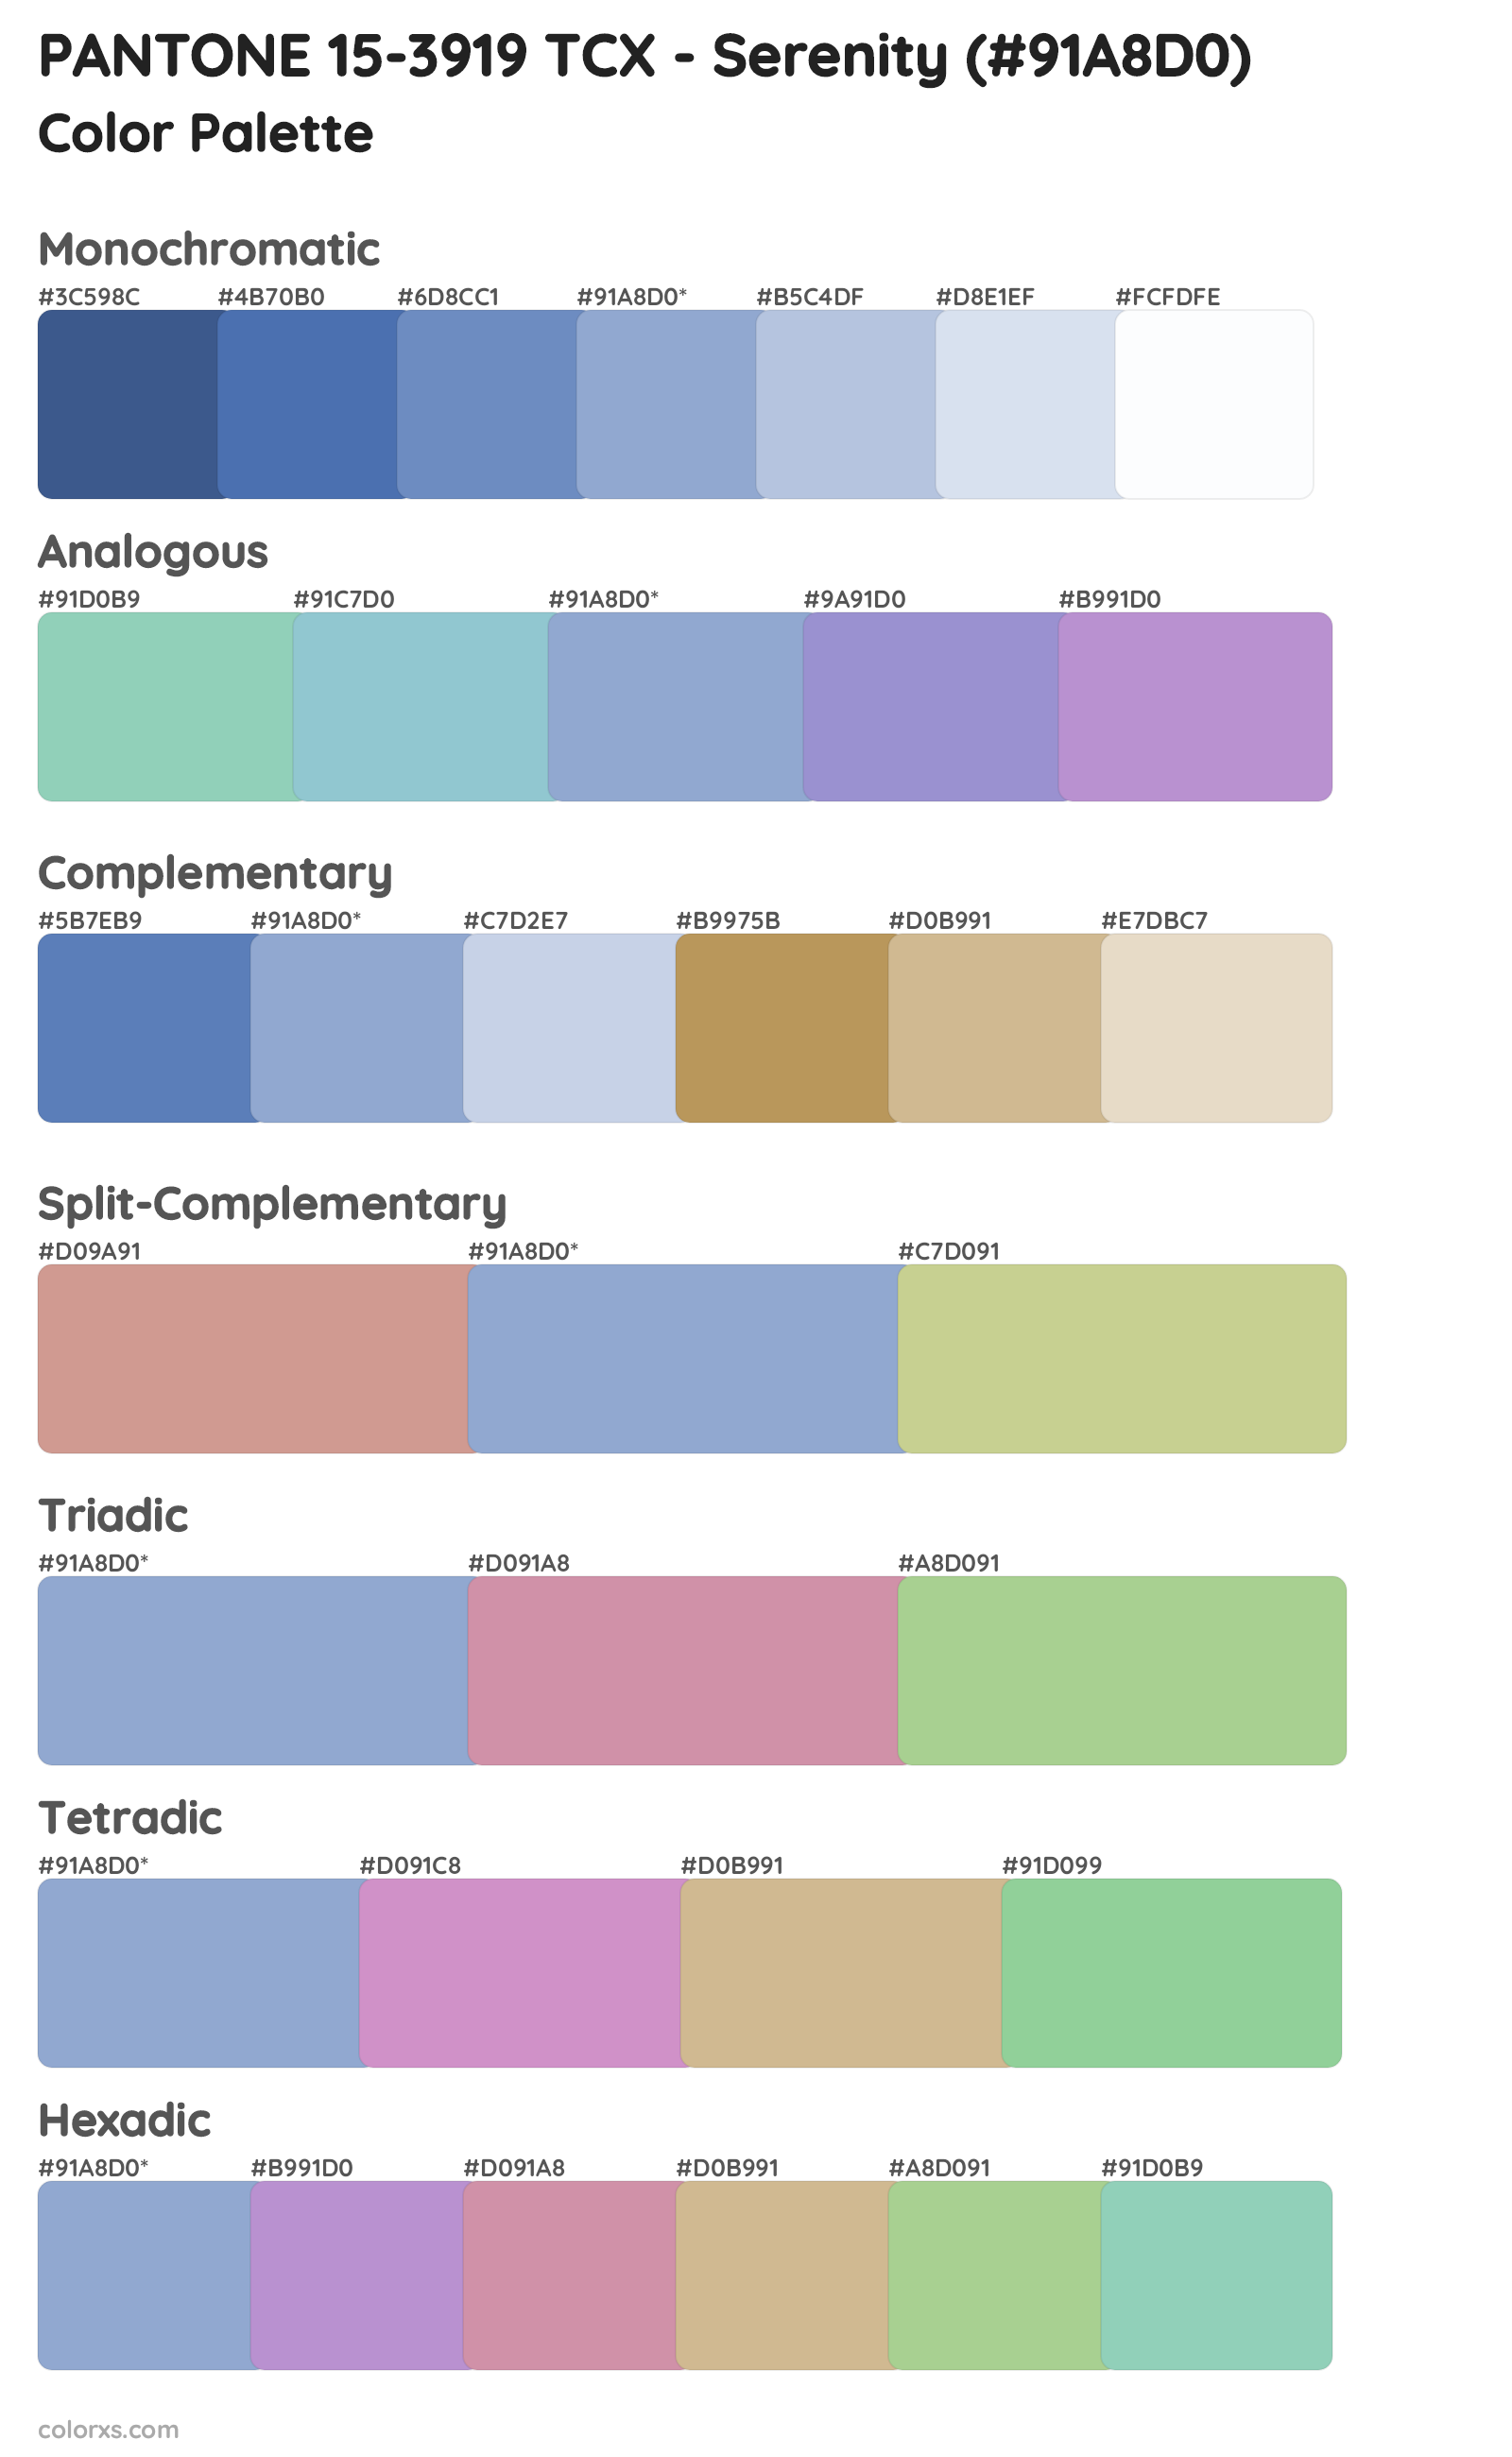 PANTONE 15-3919 TCX - Serenity Color Scheme Palettes